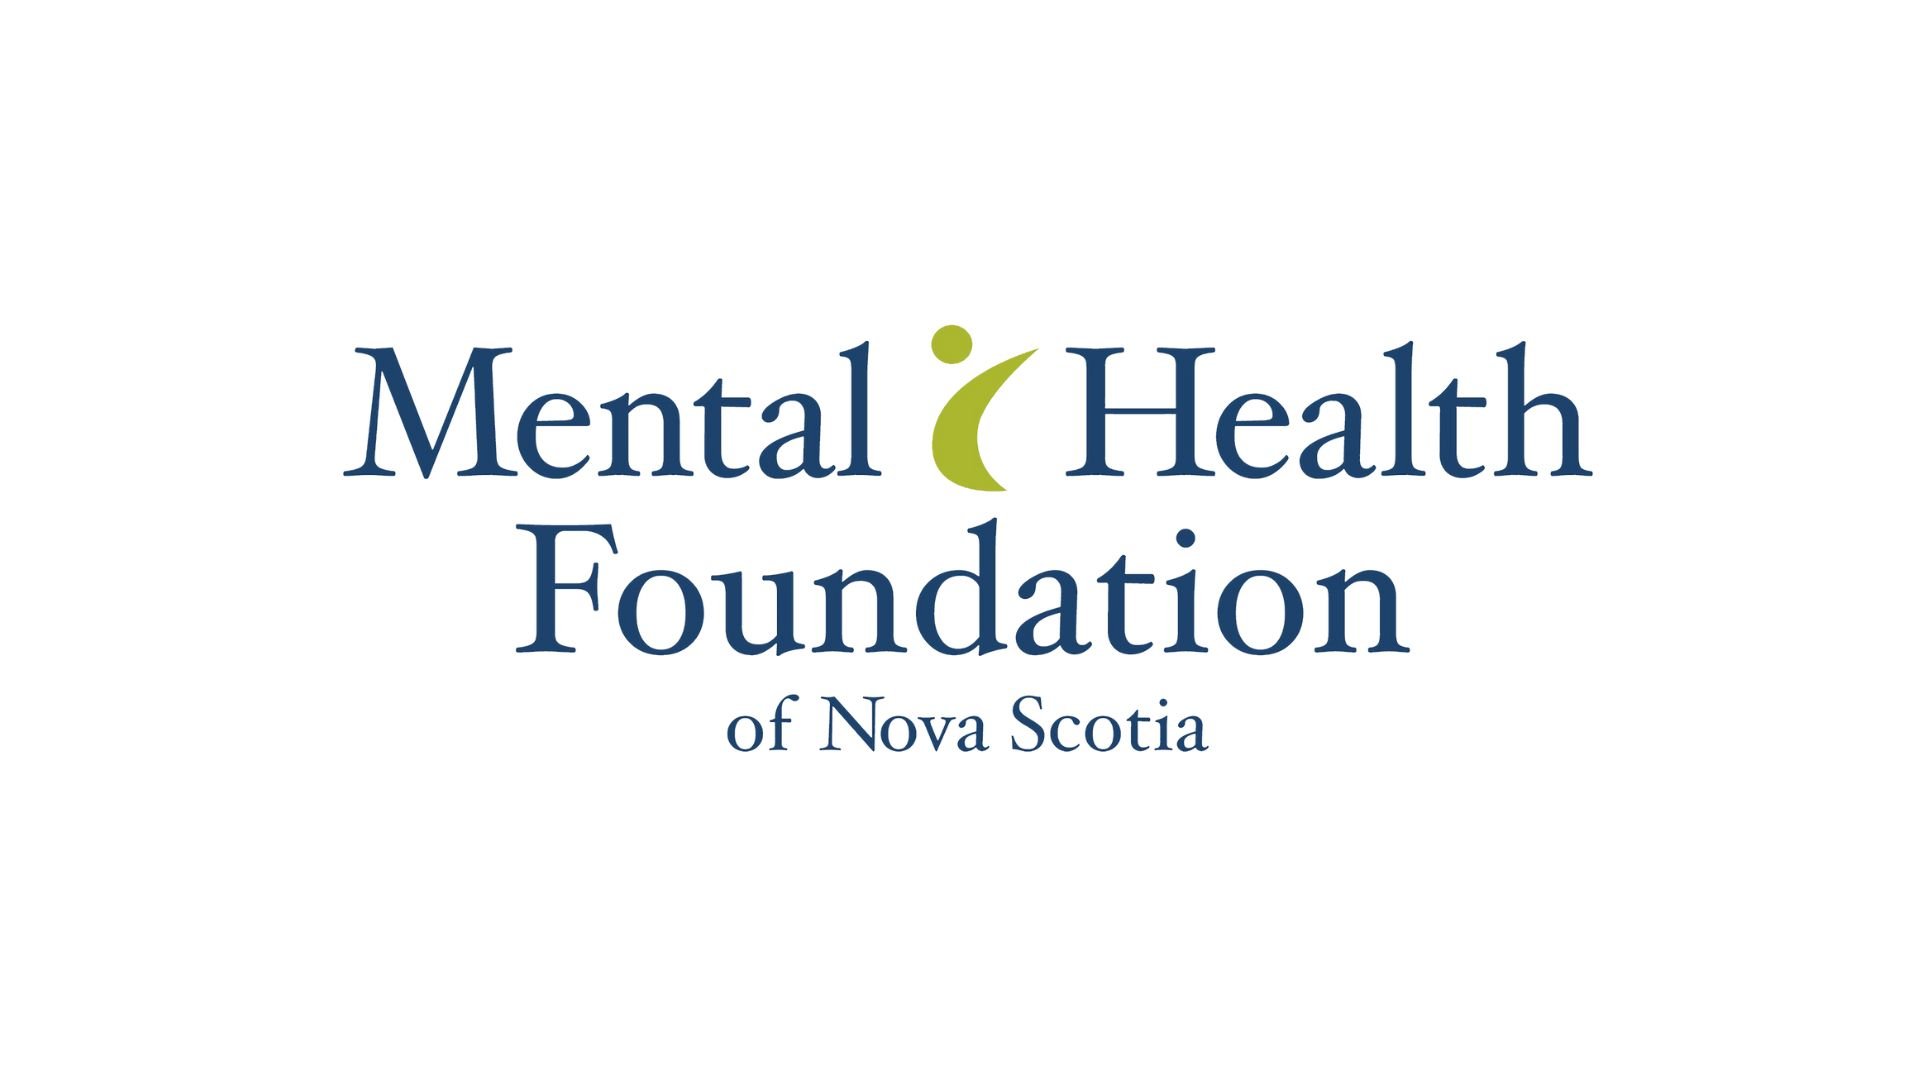 Mental Health Foundation of Nova Scotia Logo.jpg